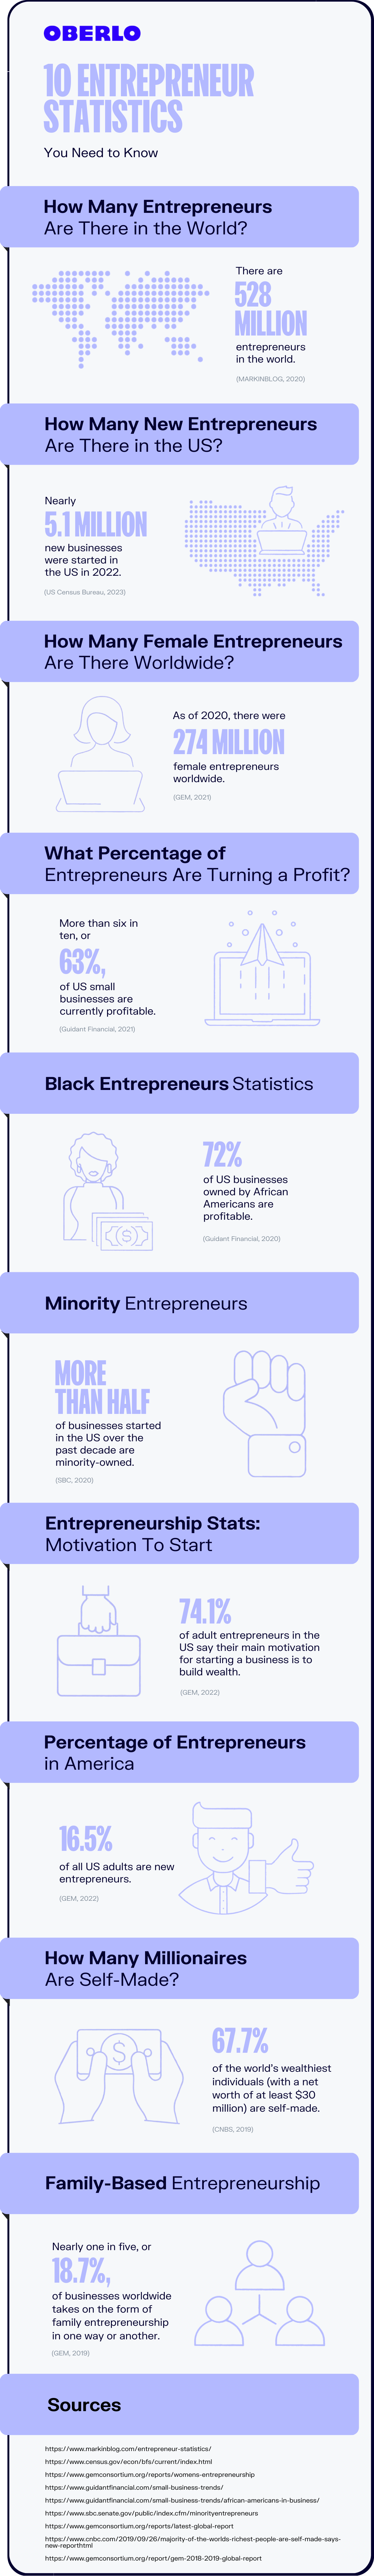 infografía completa de estadísticas de emprendedores